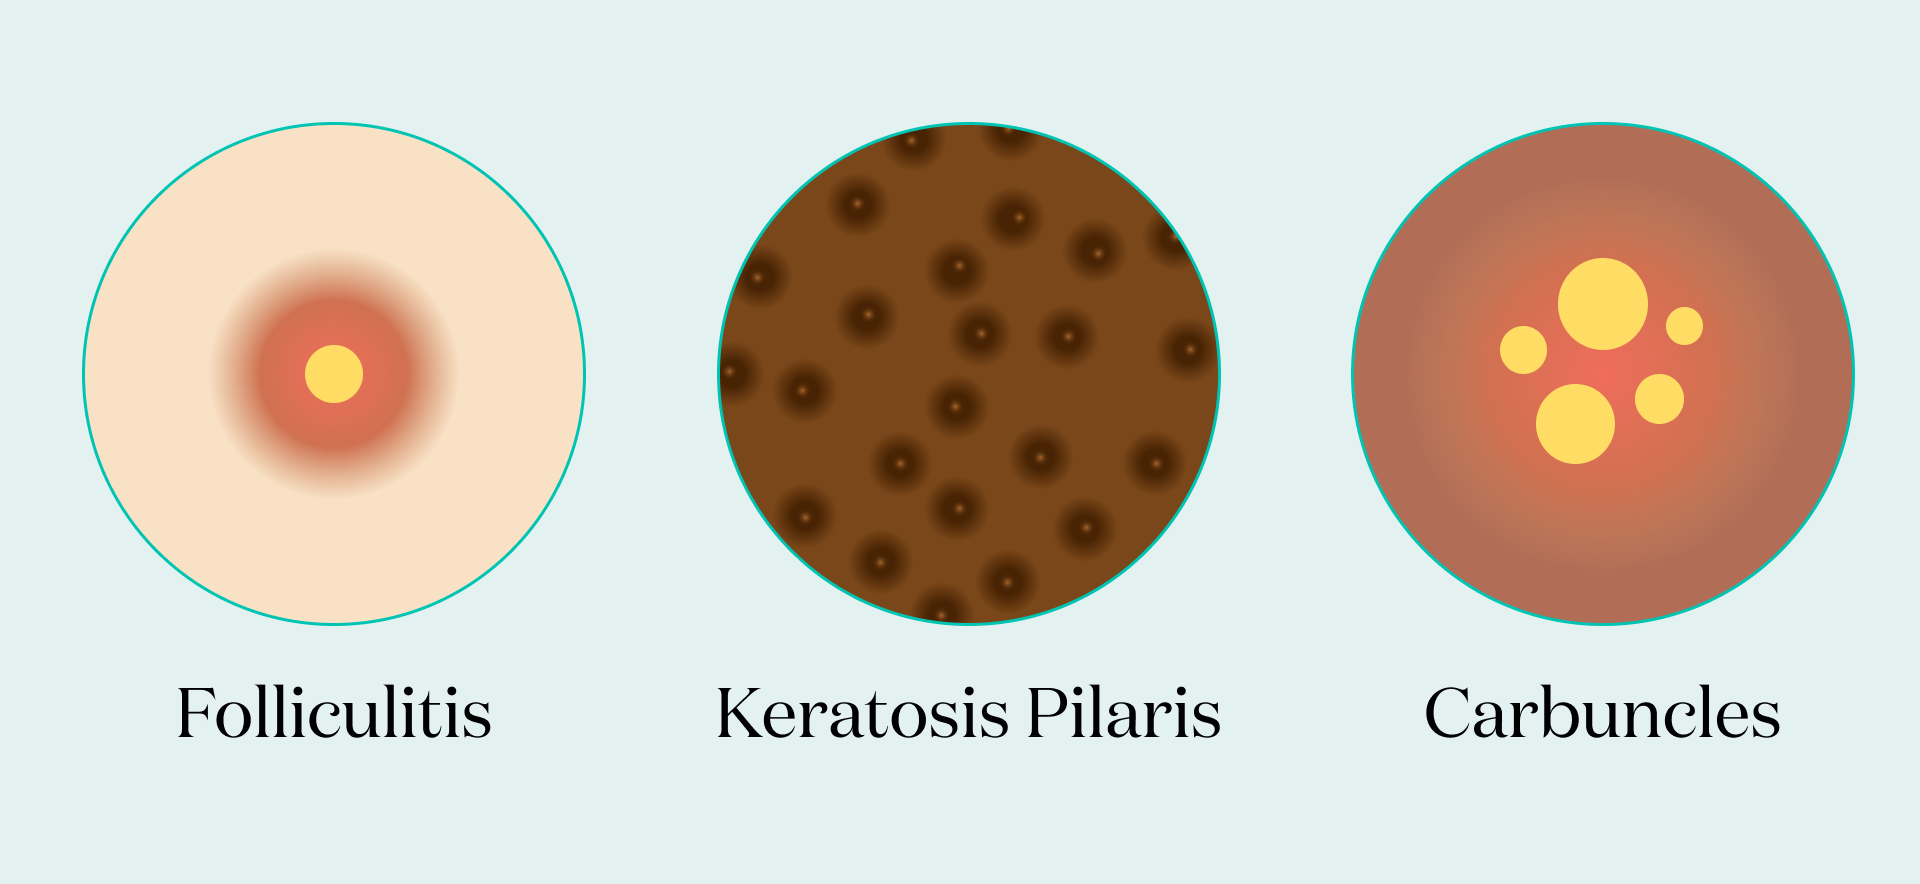 Illustrations of folliculitis, keratosis pilaris, and carbuncles